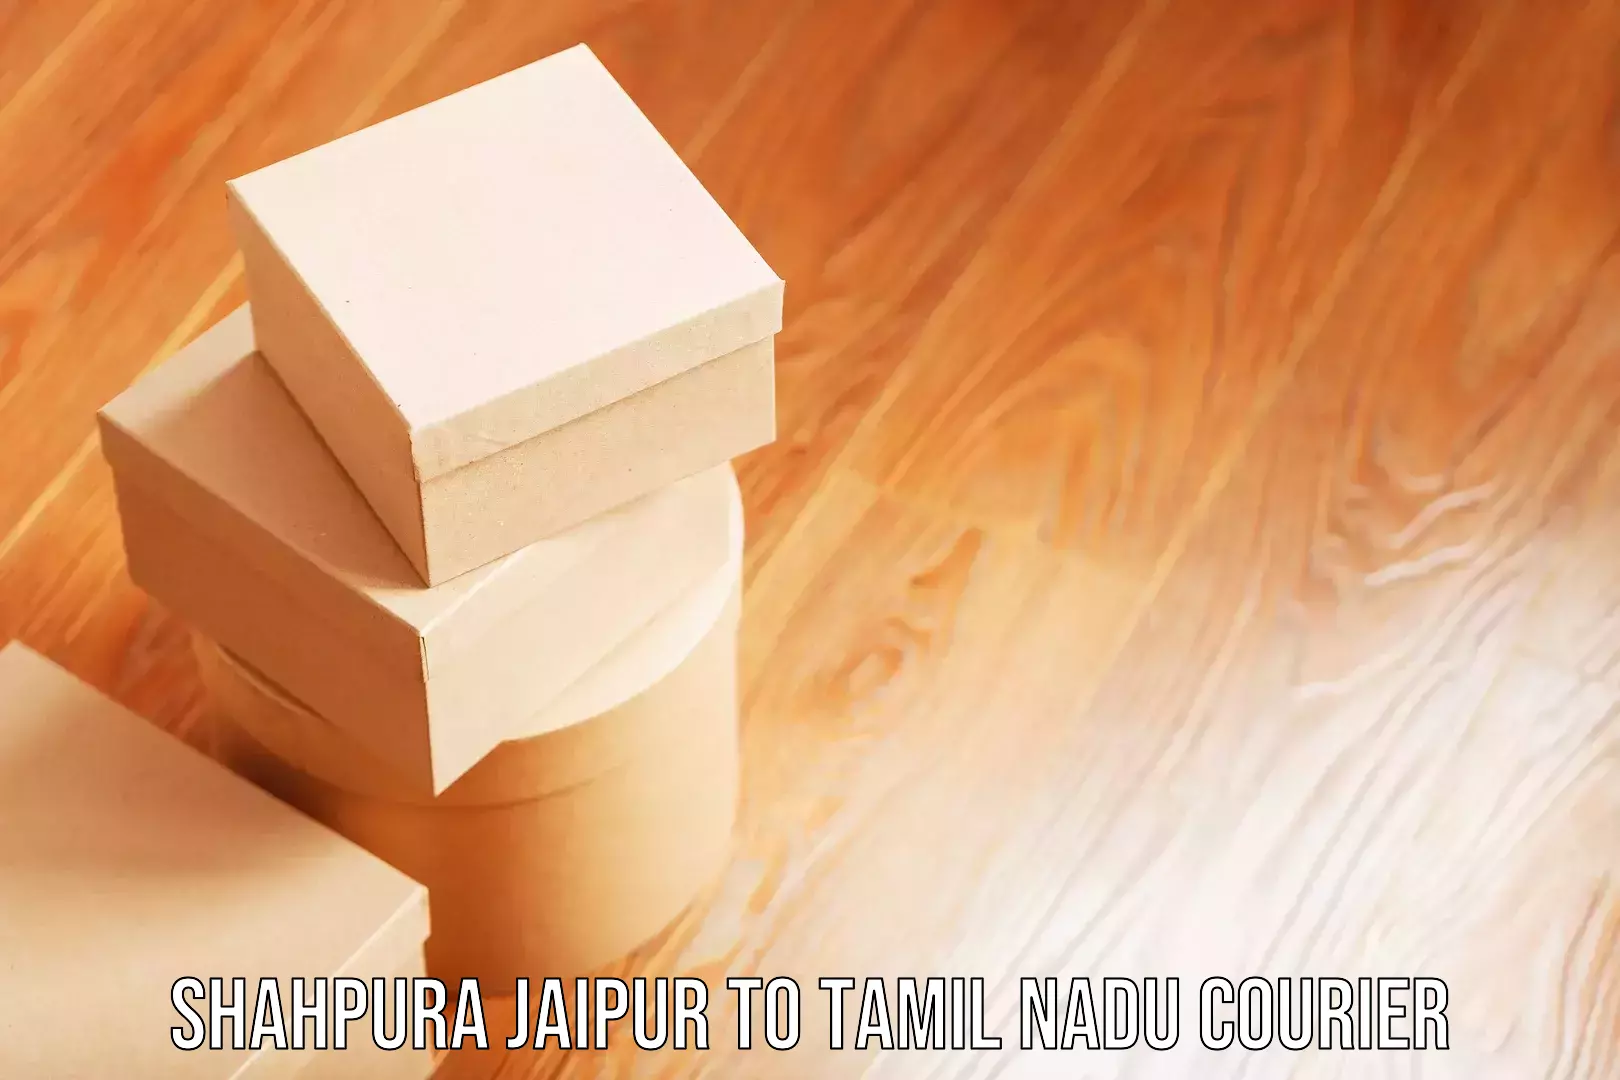 Baggage delivery technology Shahpura Jaipur to Udumalpet